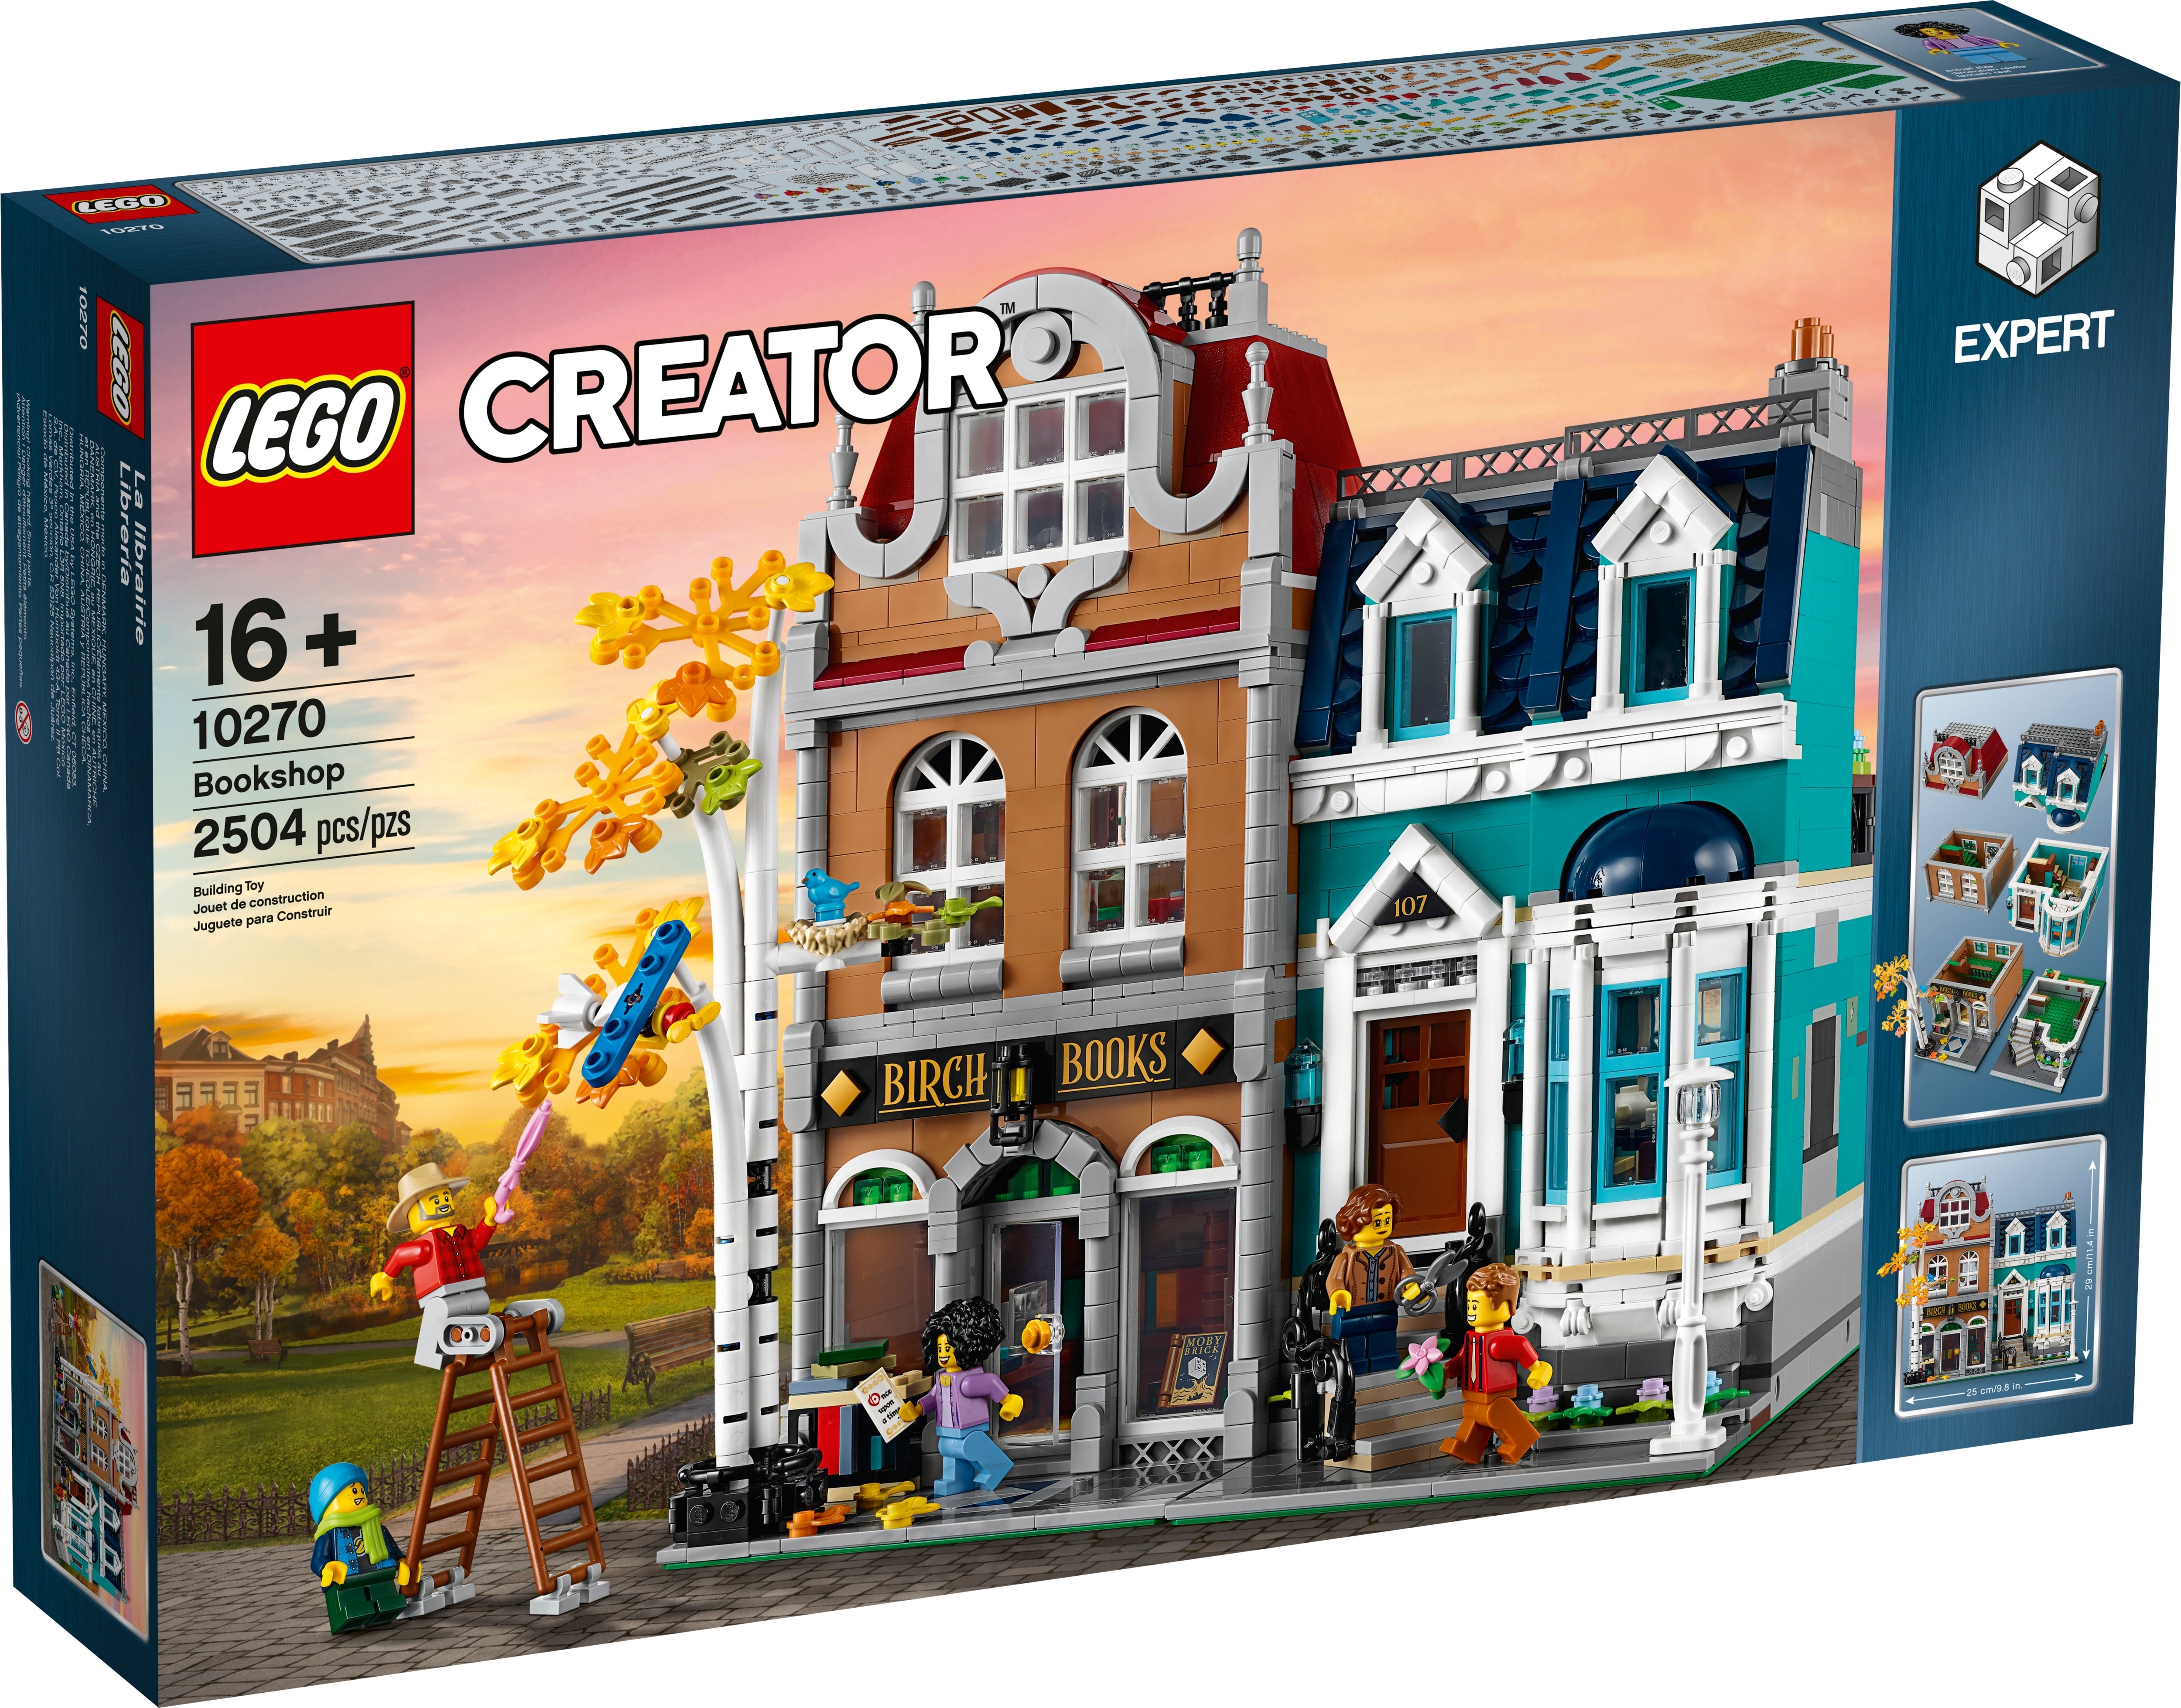 LEGO Creator Expert - Buchhandlung (10270) - im GOLDSTIEN.SHOP verfügbar mit Gratisversand ab Schweizer Lager! (5702016667974)